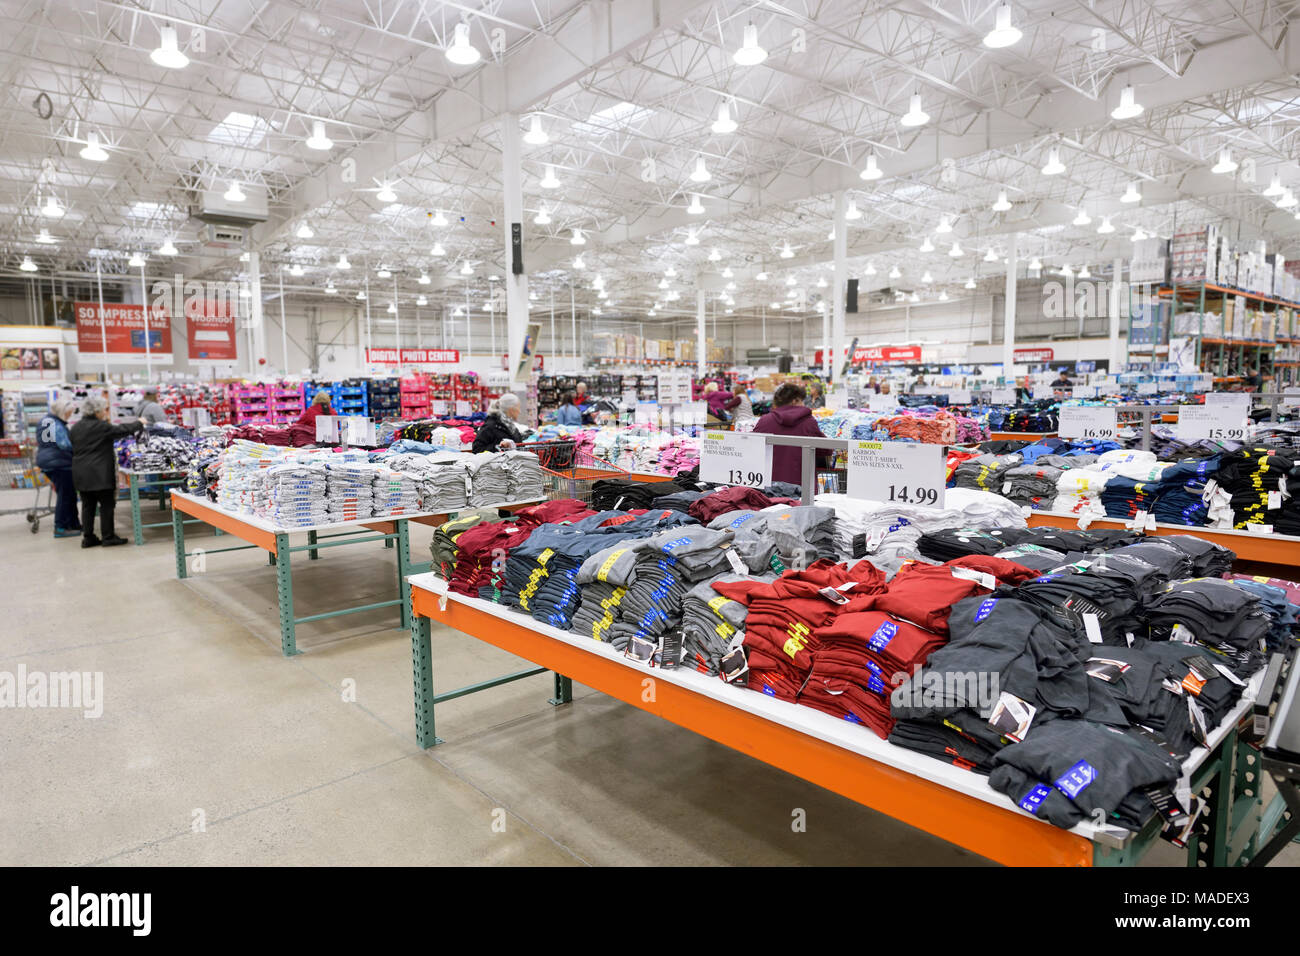 Costco Wholesale appartenenza negozio magazzino interno, T-shirt all'abbigliamento sezione. La British Columbia, Canada 2017. Foto Stock